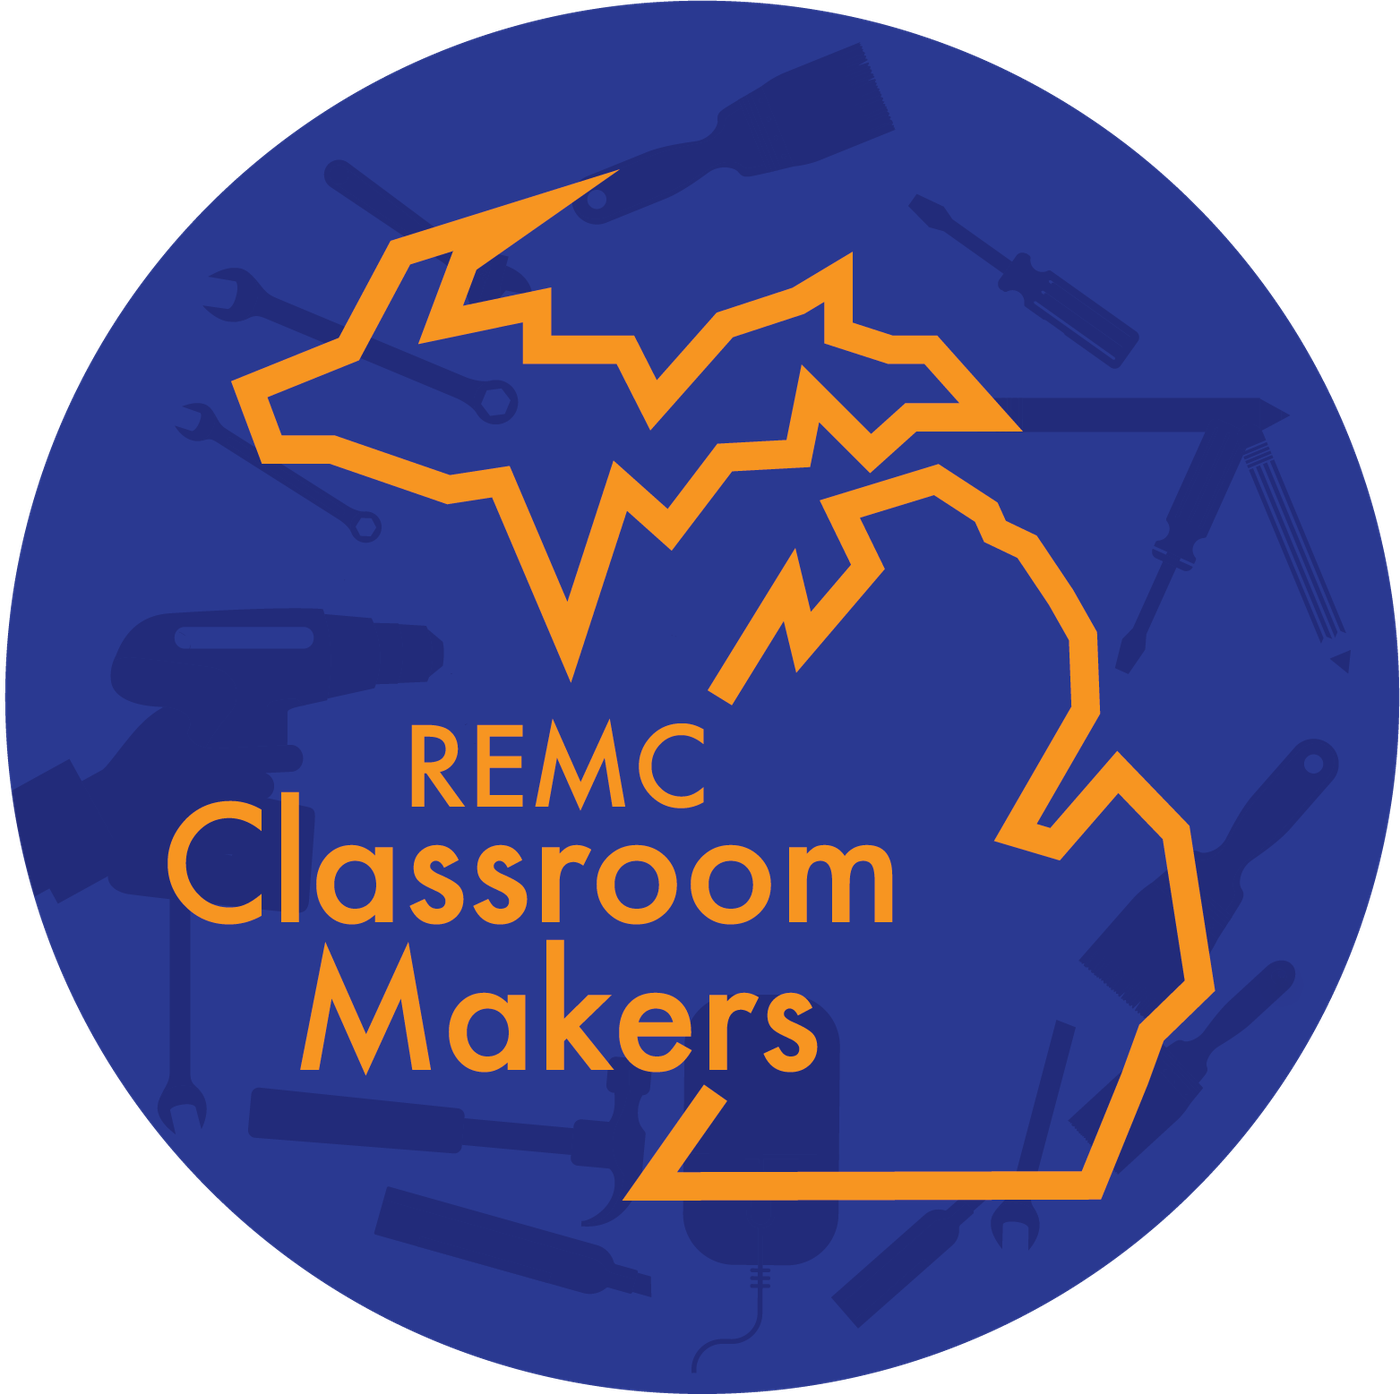 REMC Classroom Makers